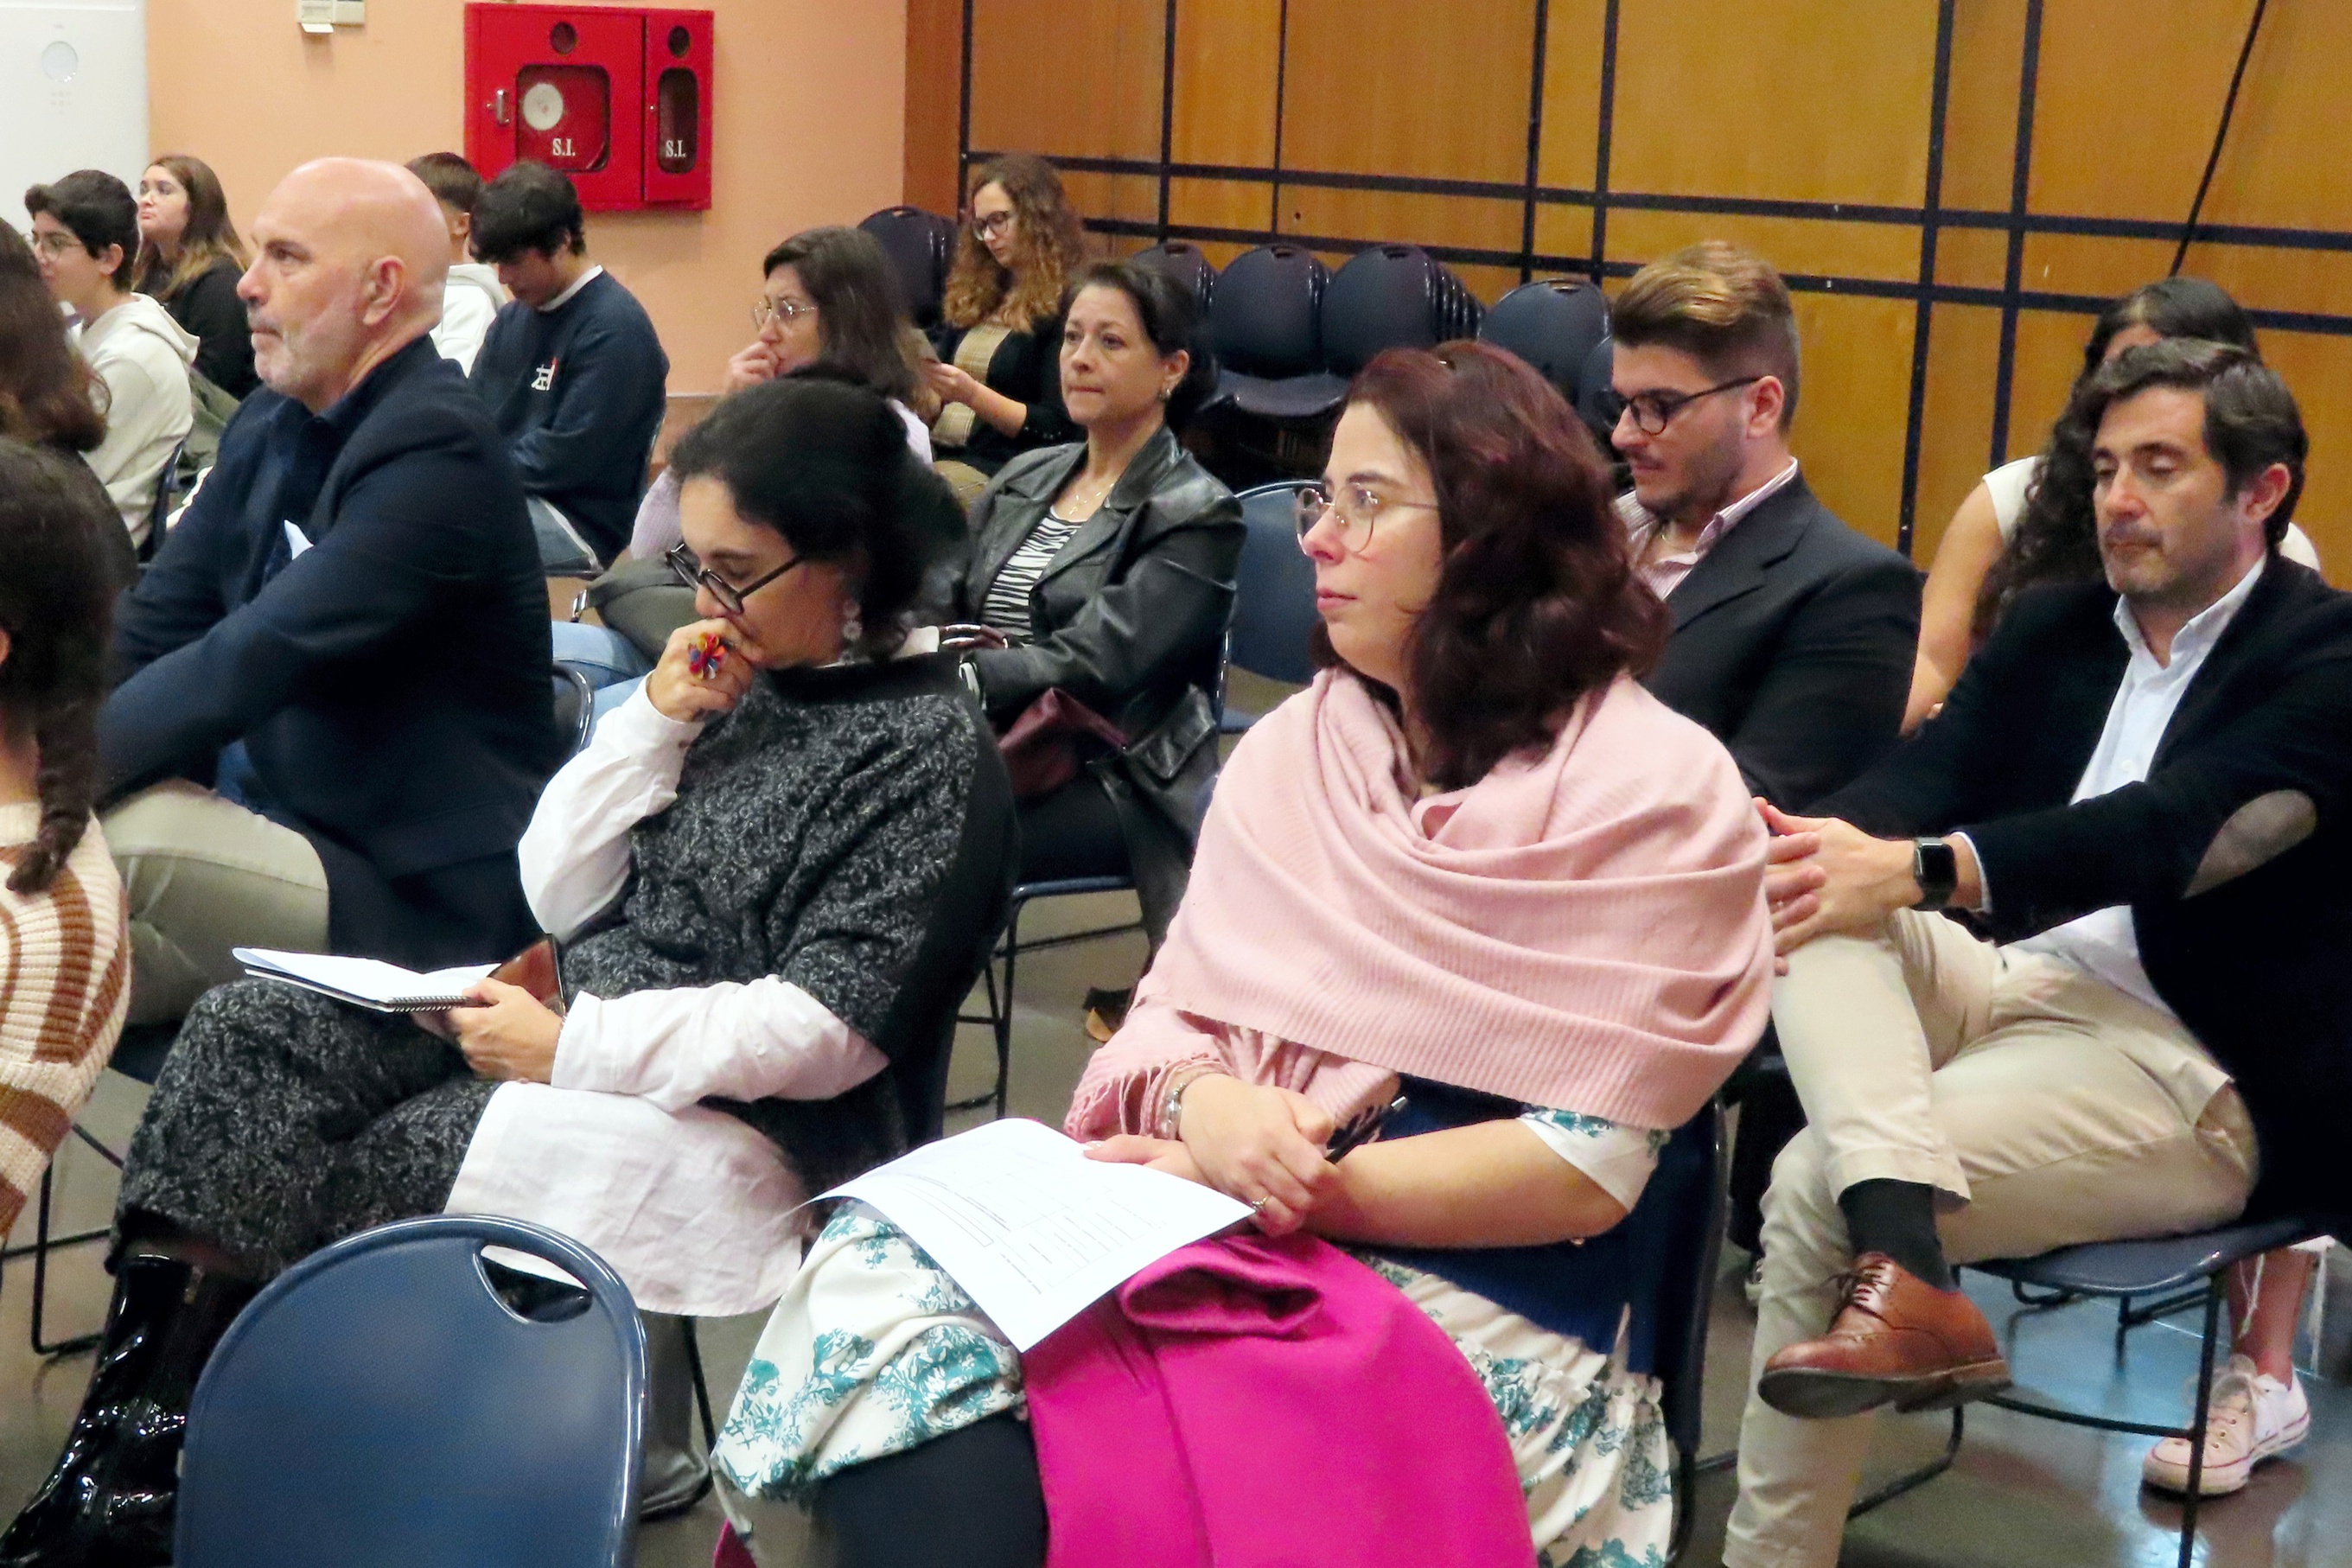 Plateia com vista o juri do concurso, Dr. Miguel Rasquinho à esquerda, Eng. Carmen Carvalheira ao meio e Dra. Sandra Abelha à direita.